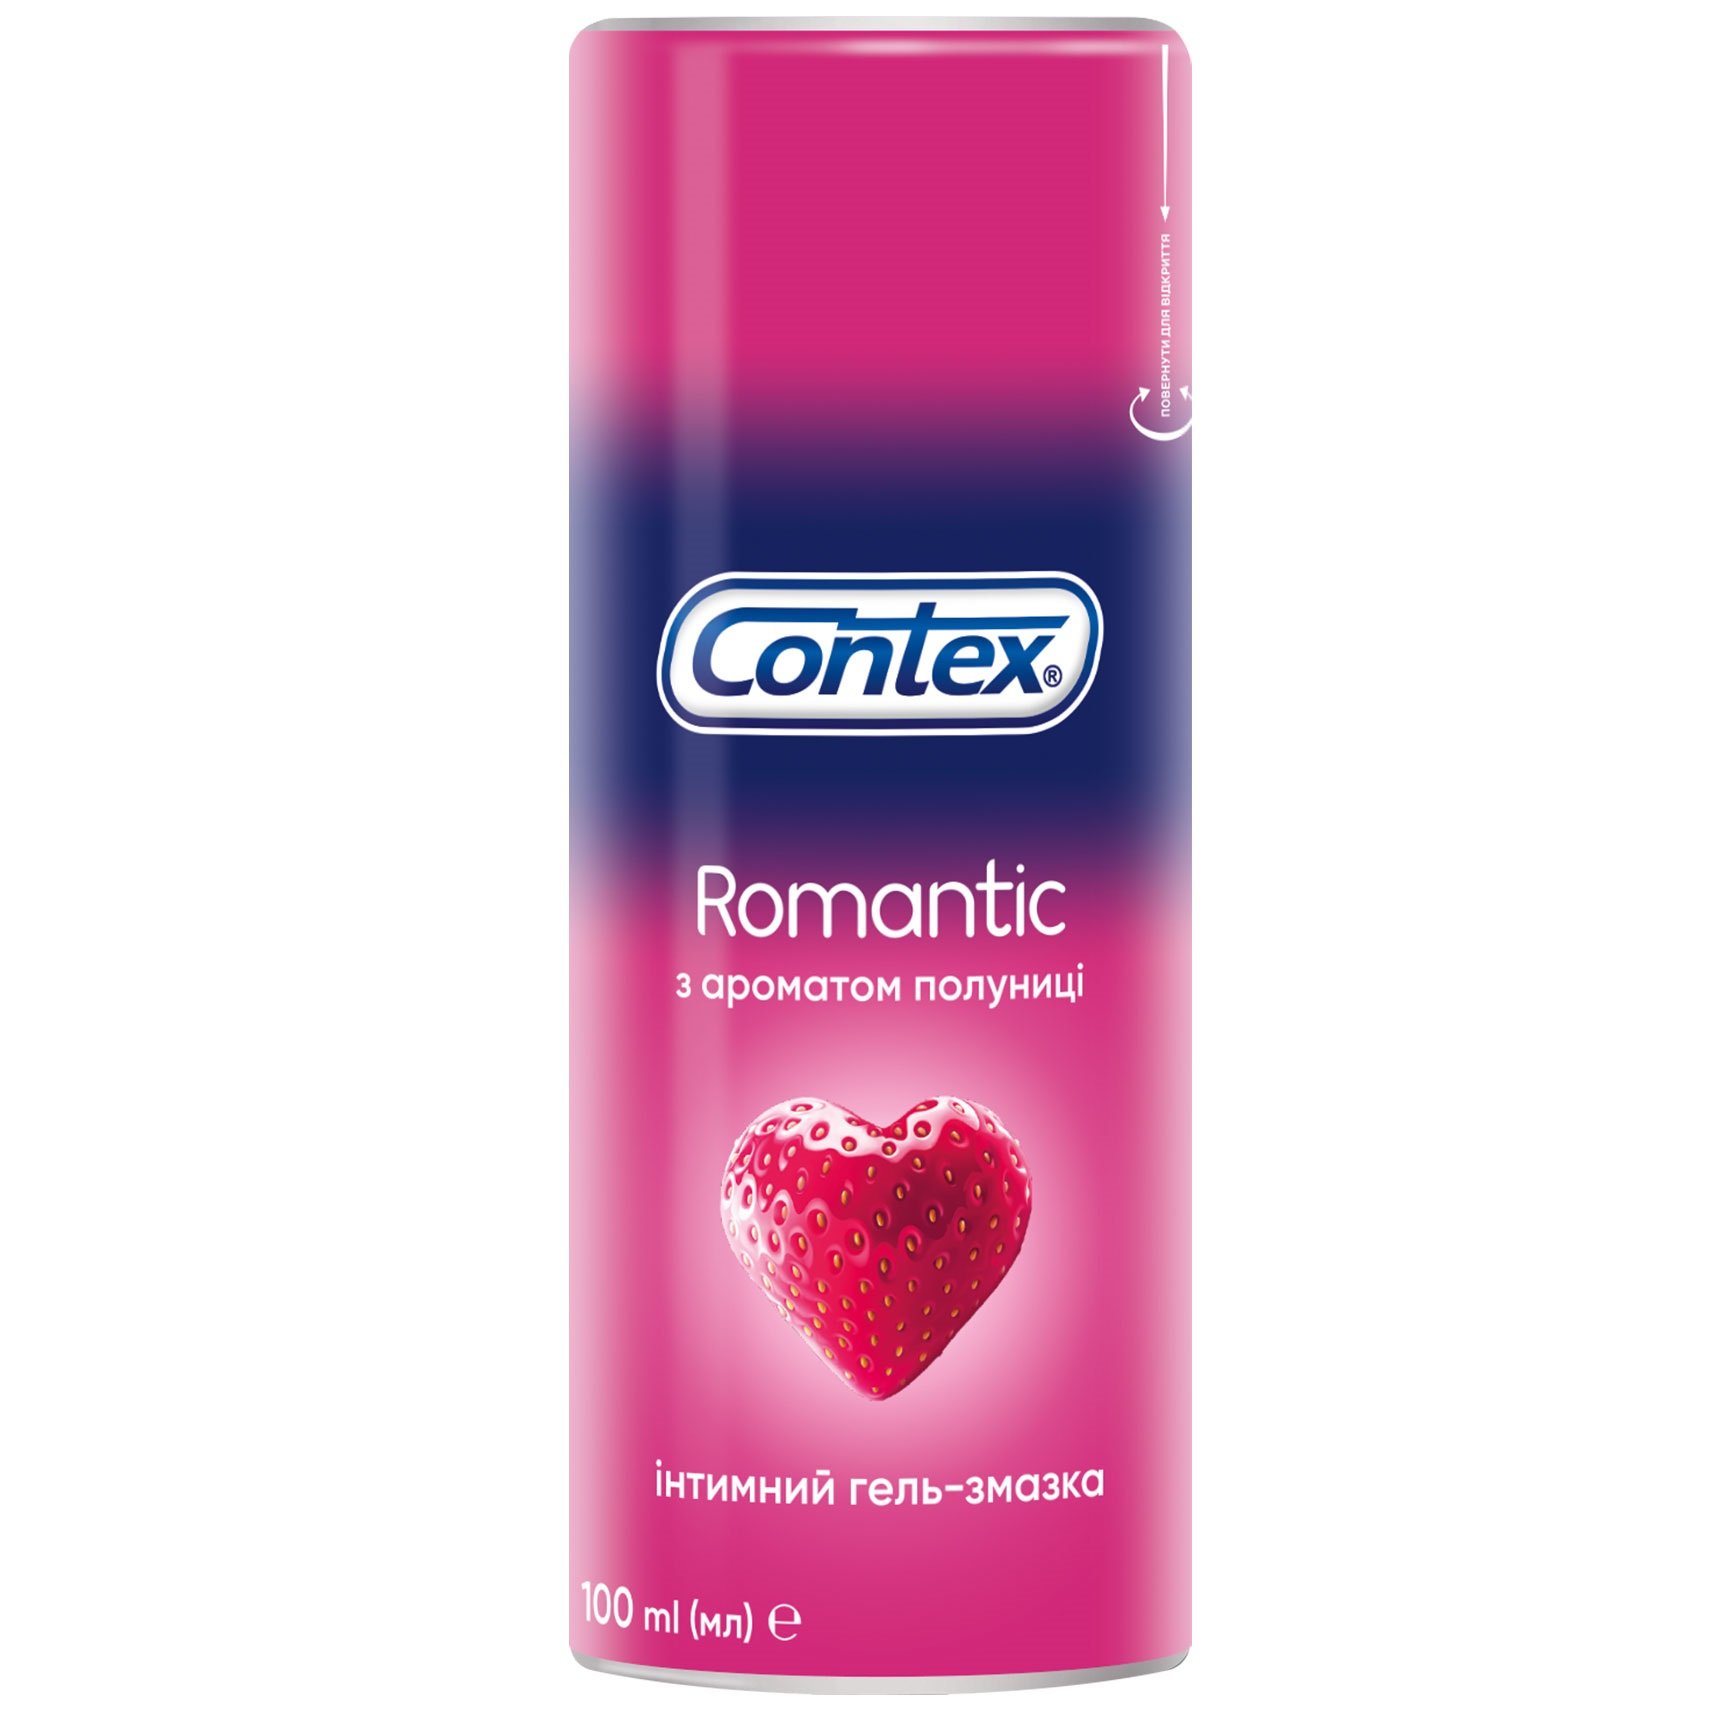 Інтимний гель-змазка Contex Romantic з ароматом полуниці (лубрикант), 100 мл (8159537) - фото 1